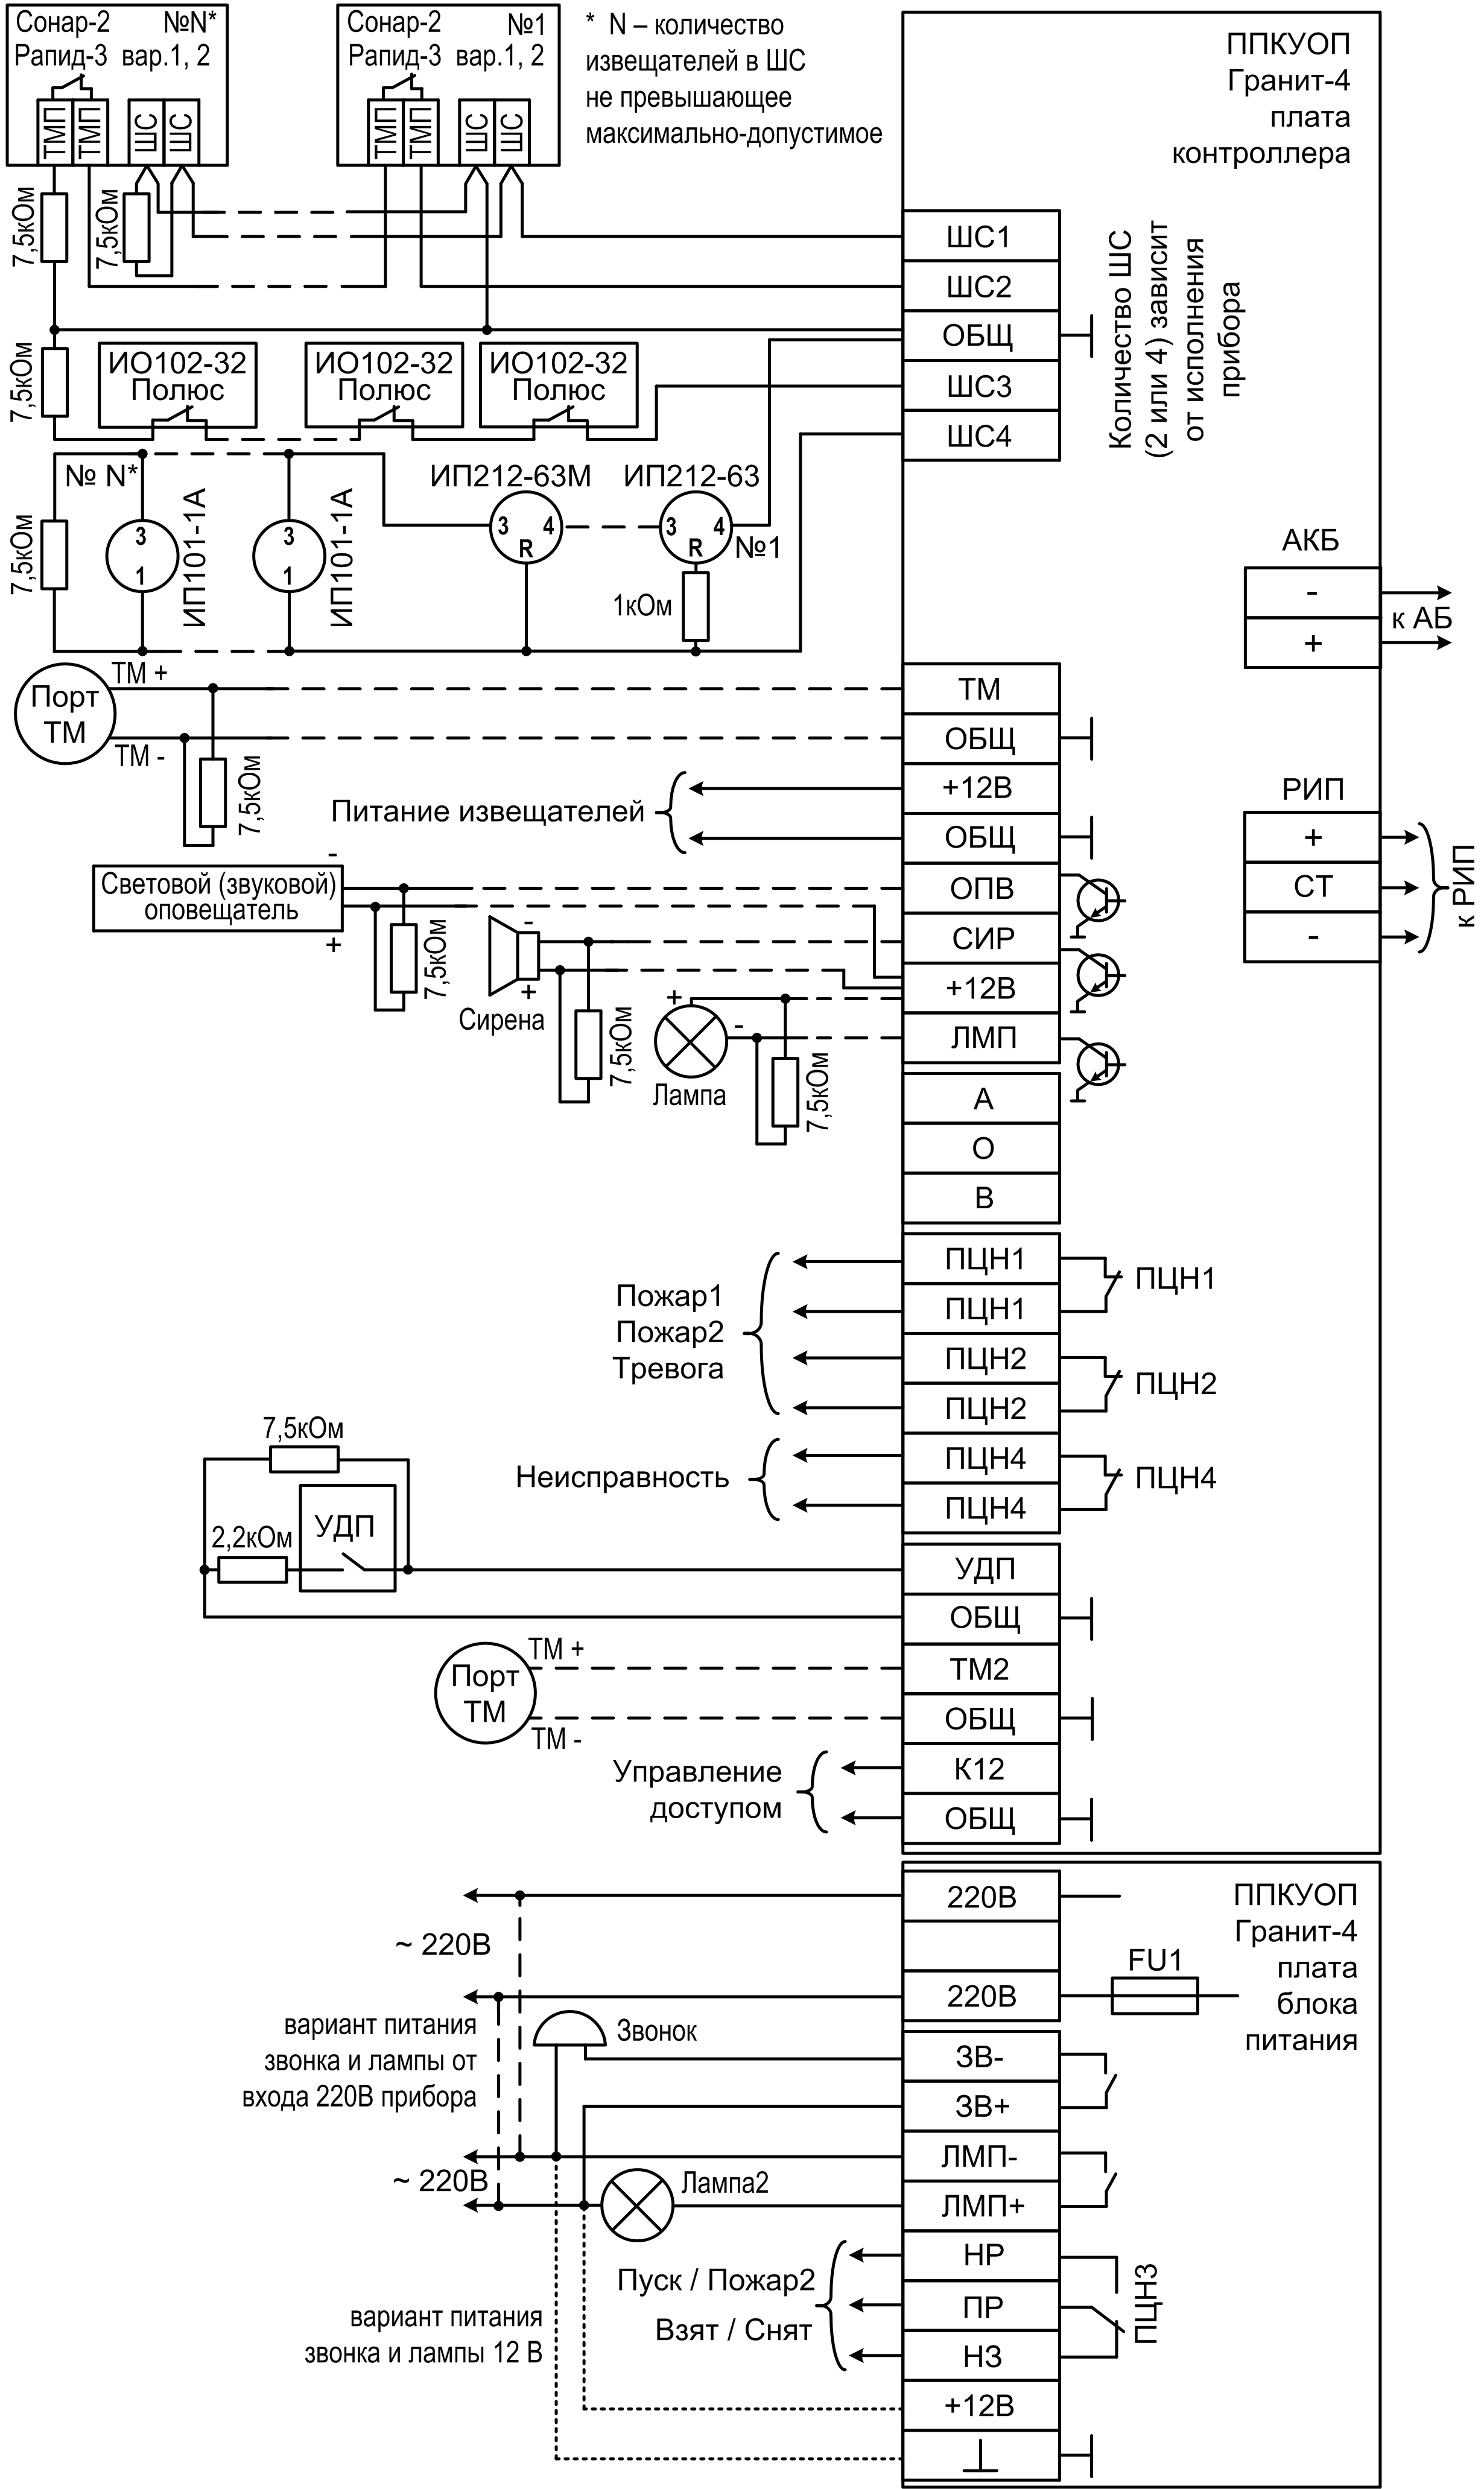 Схема подключения Гранит-2